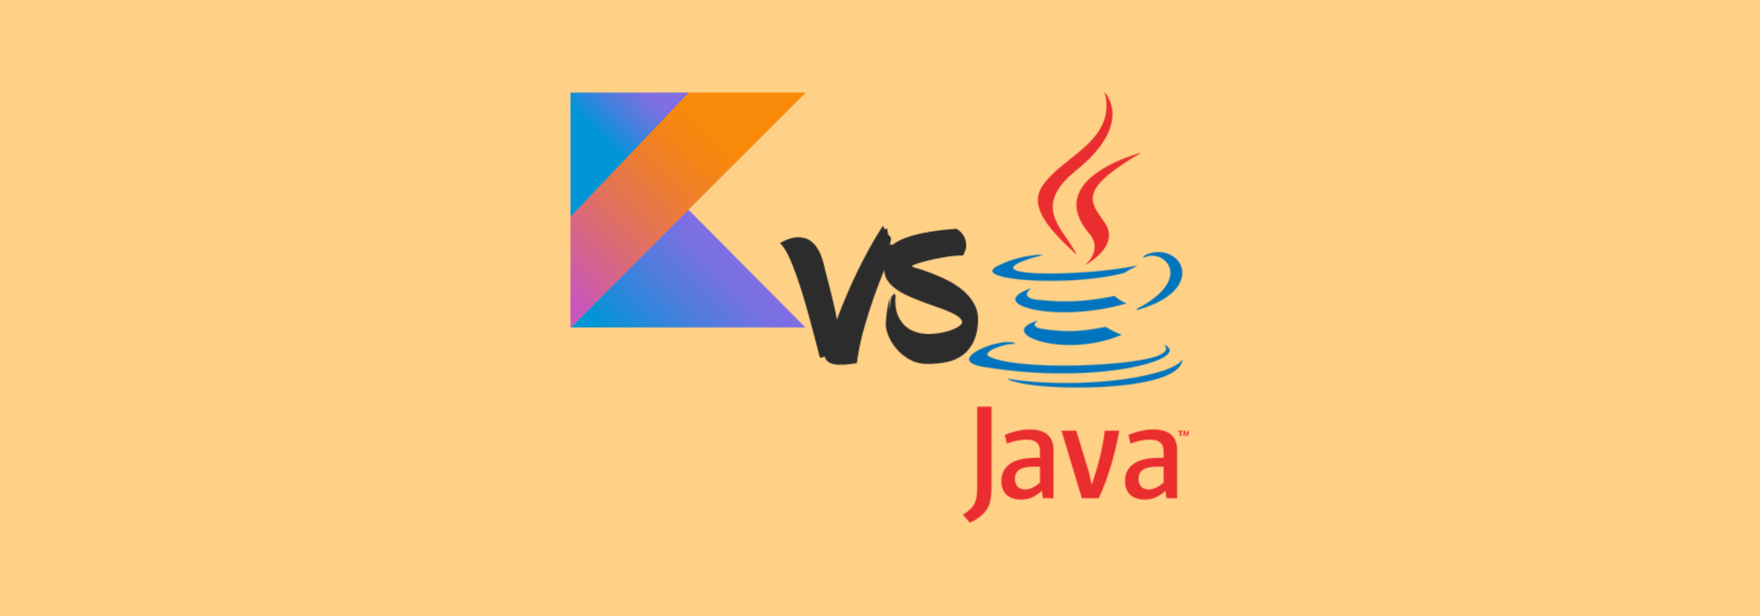 Java vs Kotlin для Android-разработки: ответы «за» и «против»